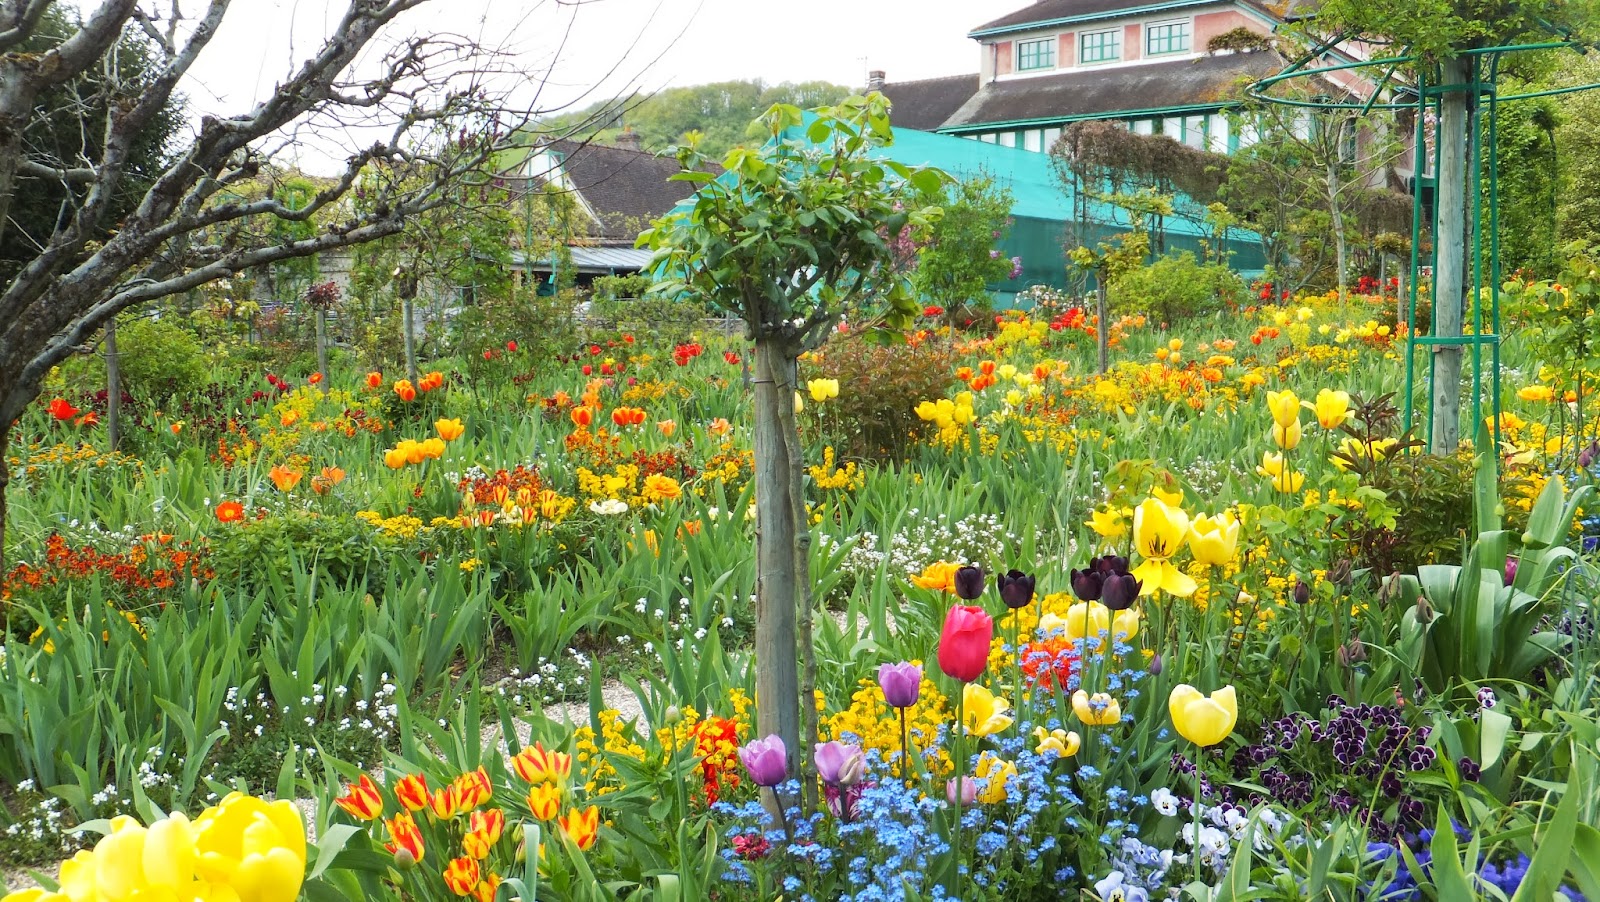 Casa y Jardines de Claude Monet, Giverny, Francia, Elisa N, Blog de Viajes